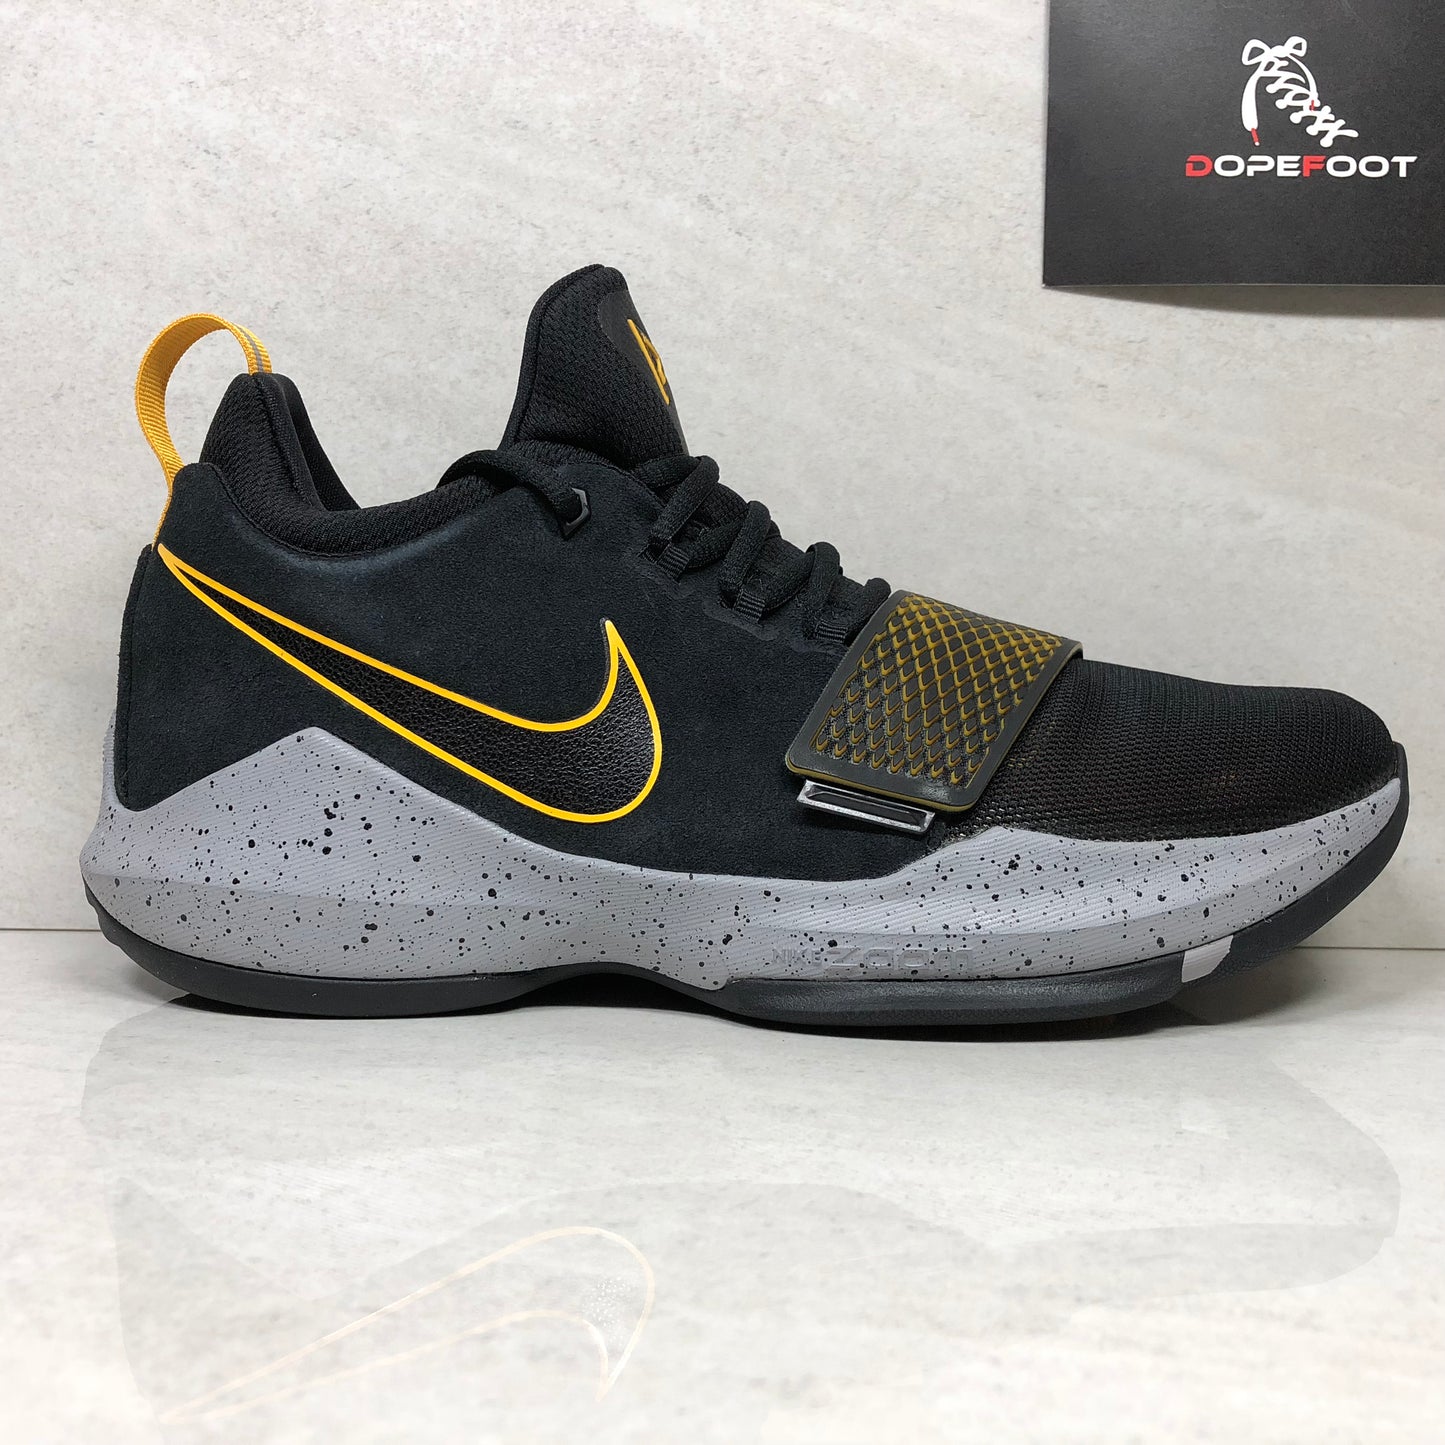 Nike Basketball PG1 - 878627-006 - Talla de hombre 10 Negro / Dorado universitario